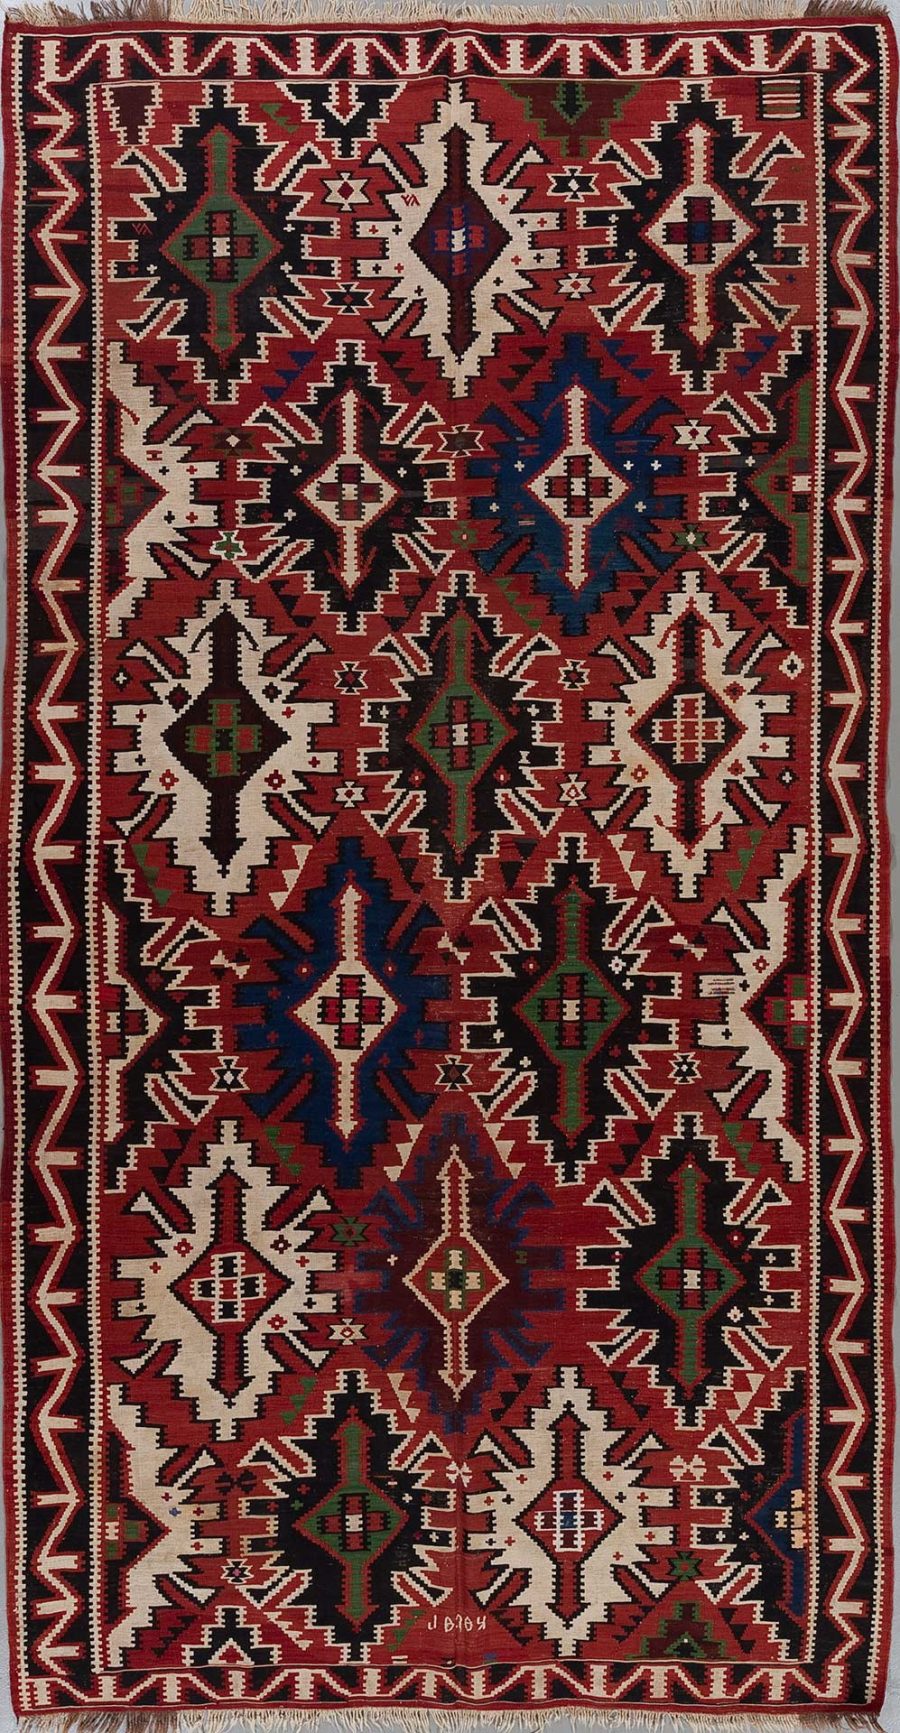 Traditioneller handgewebter Teppich mit komplexen geometrischen Mustern in Rot, Schwarz, Weiß und Blautönen, verziert mit zahlreichen Stern- und Diamantformen, umgeben von einem schmalen Bordürenmuster an den Rändern.